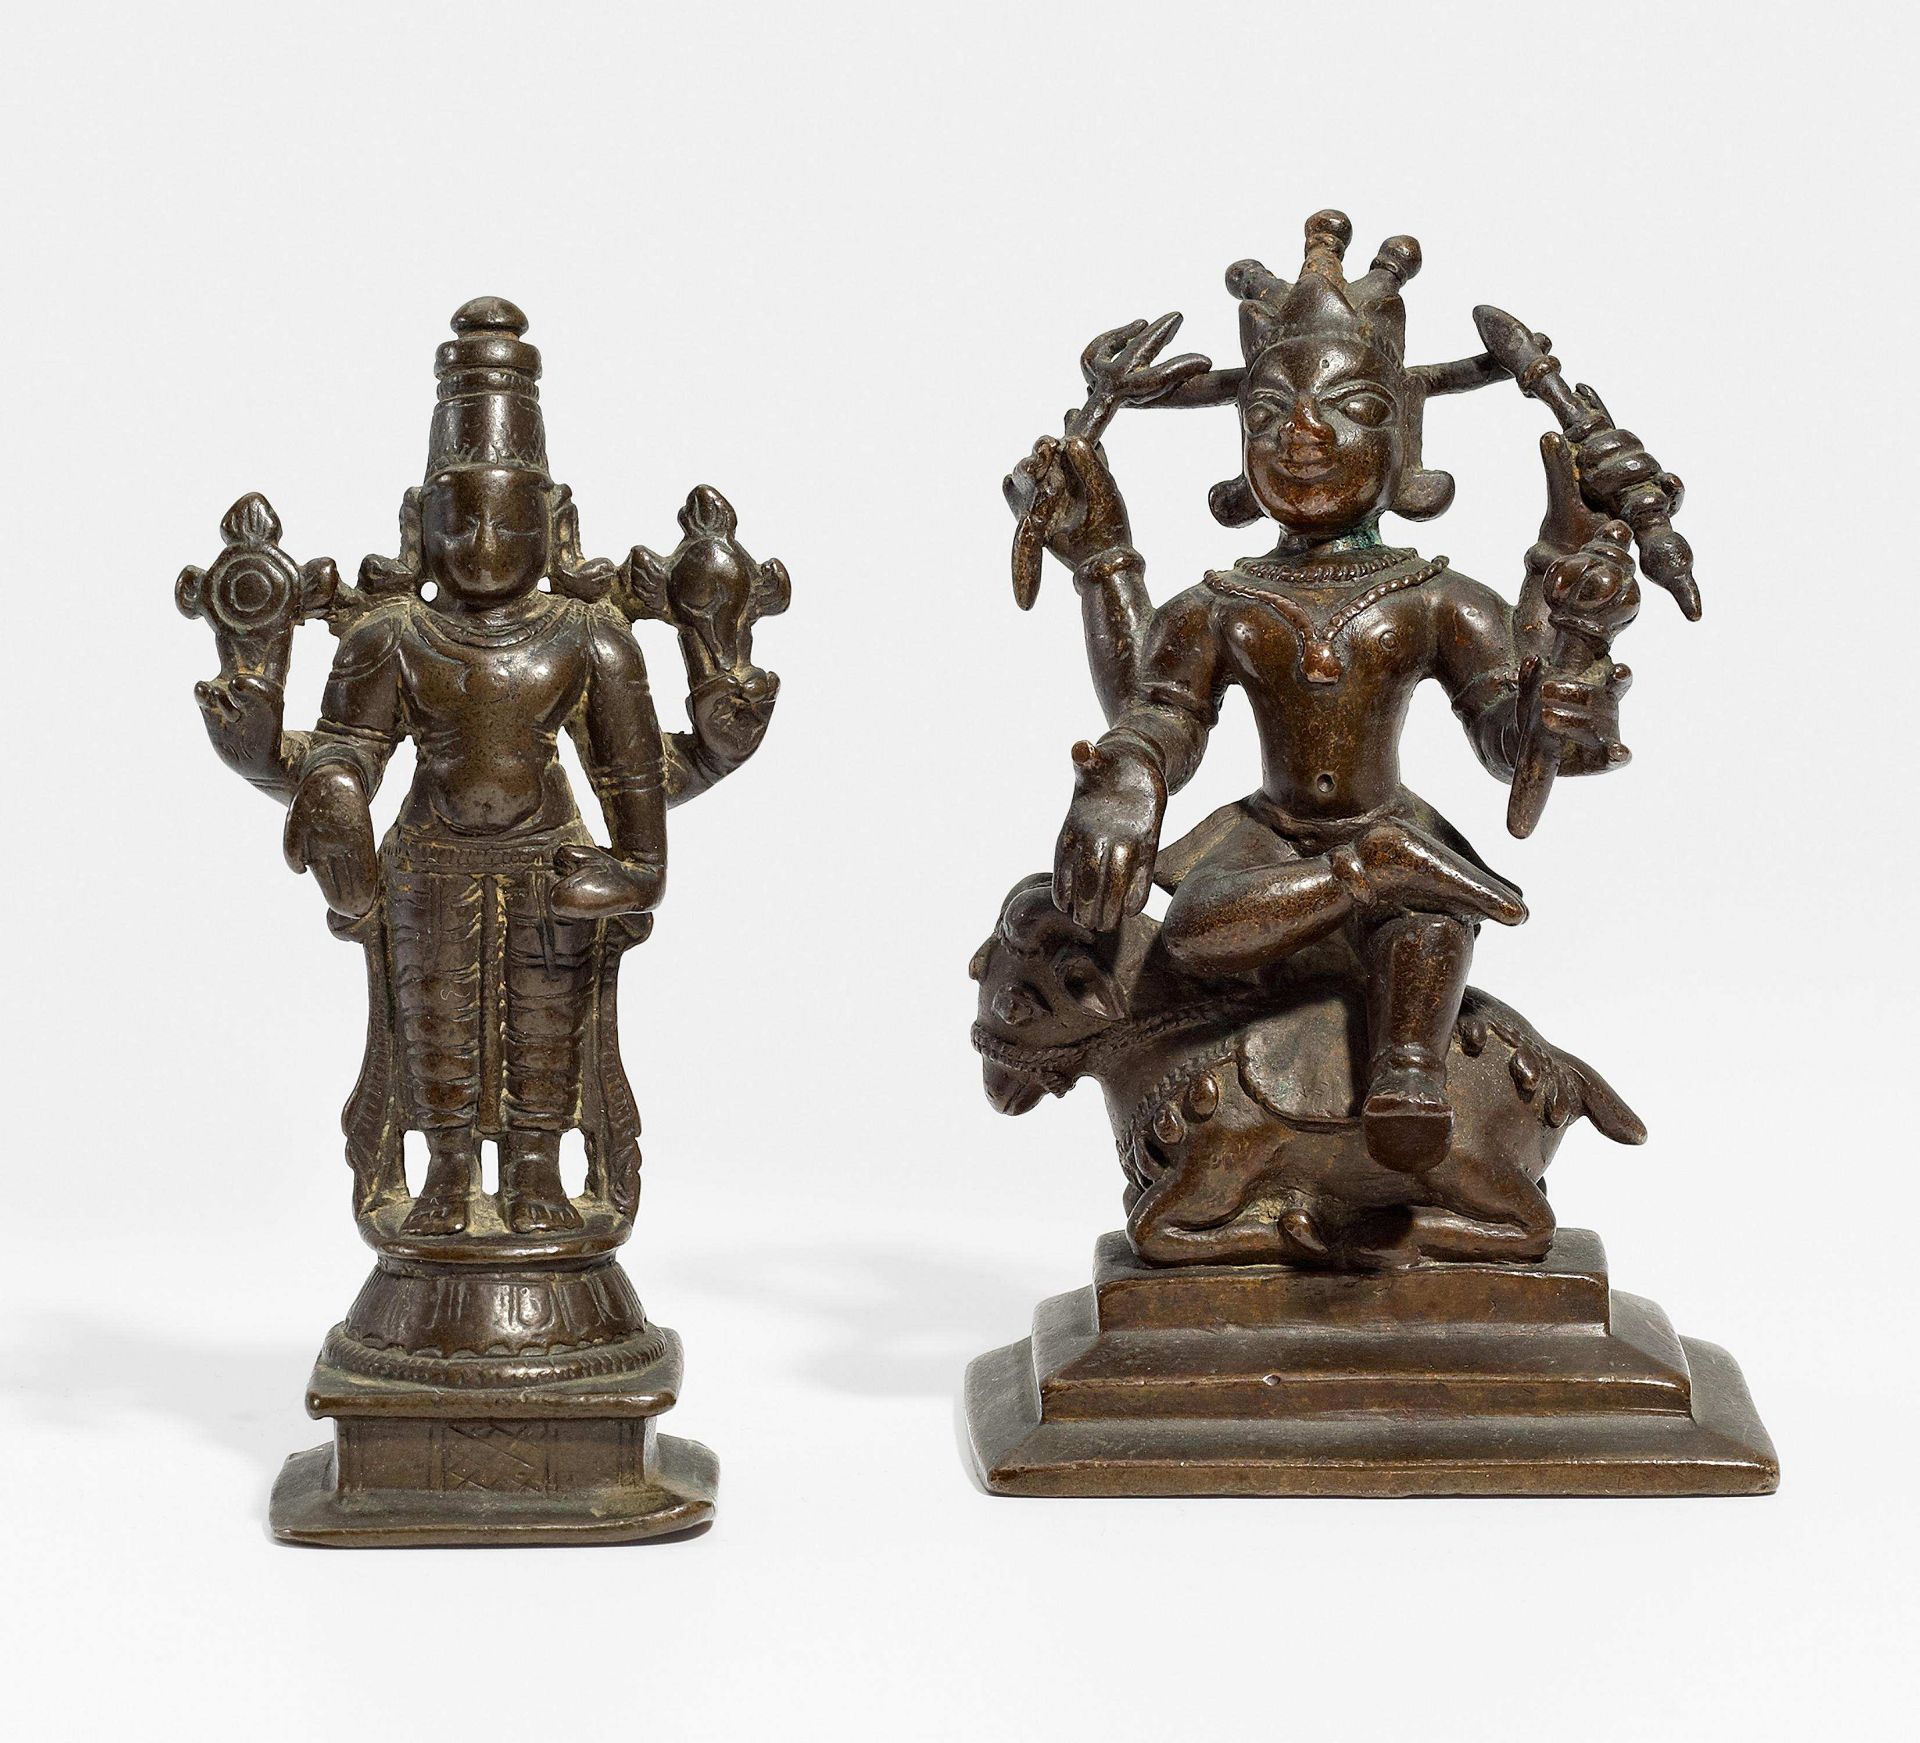 Asiatische Kunst ZWEI FIGUREN DES SHIVA. Indien. 18. Jh. oder älter. Kupferbronze mit dunkler